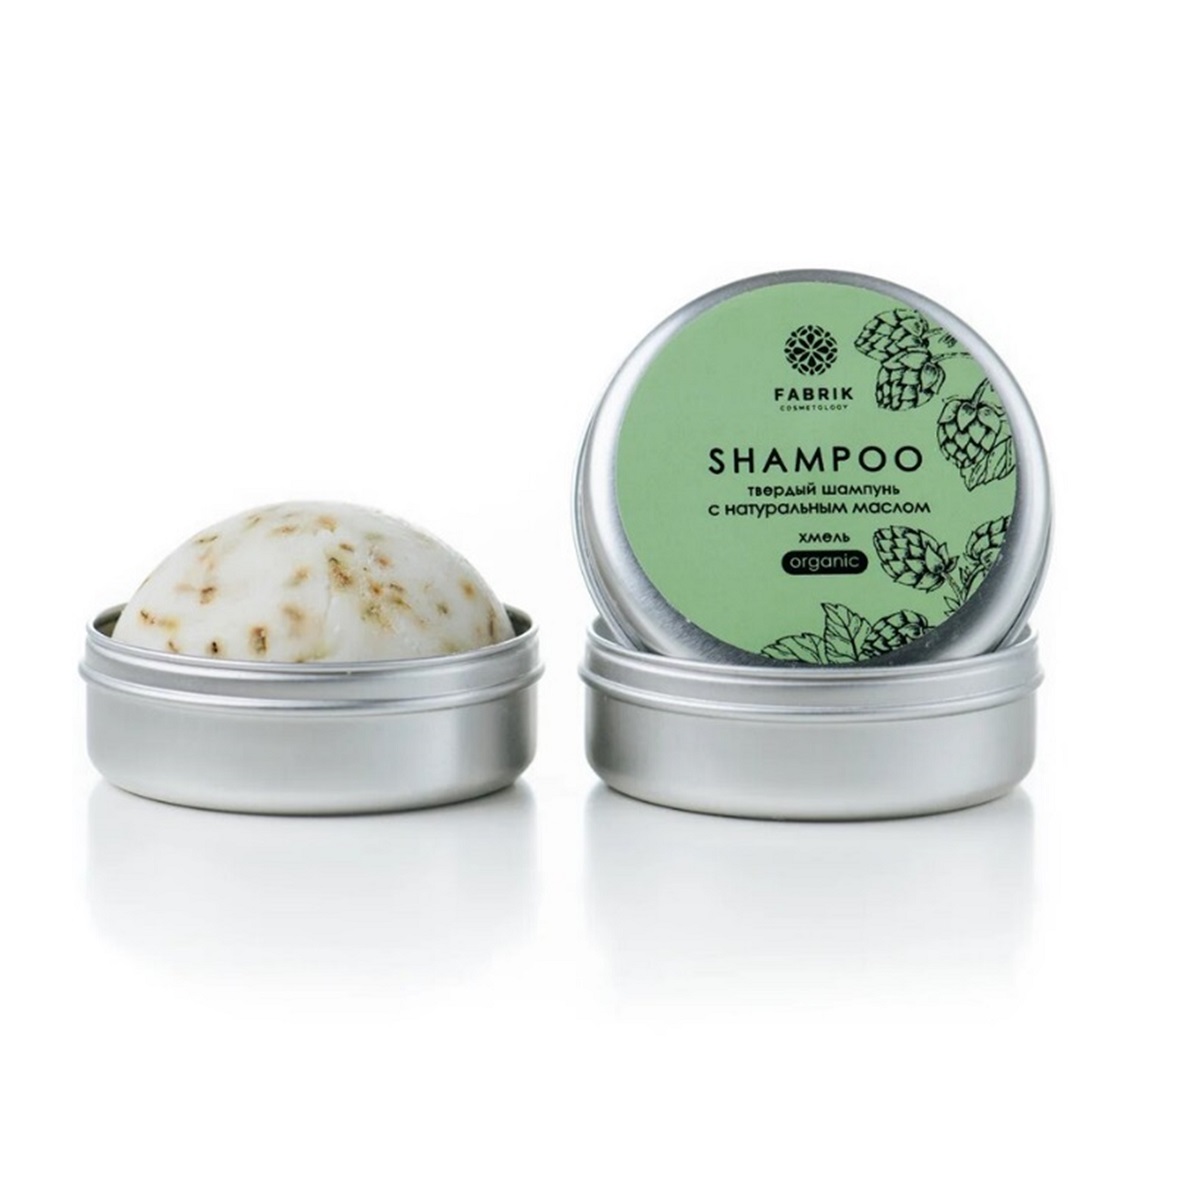 Fabrik Cosmetology Шампунь твердый с натуральным маслом Хмель 55г